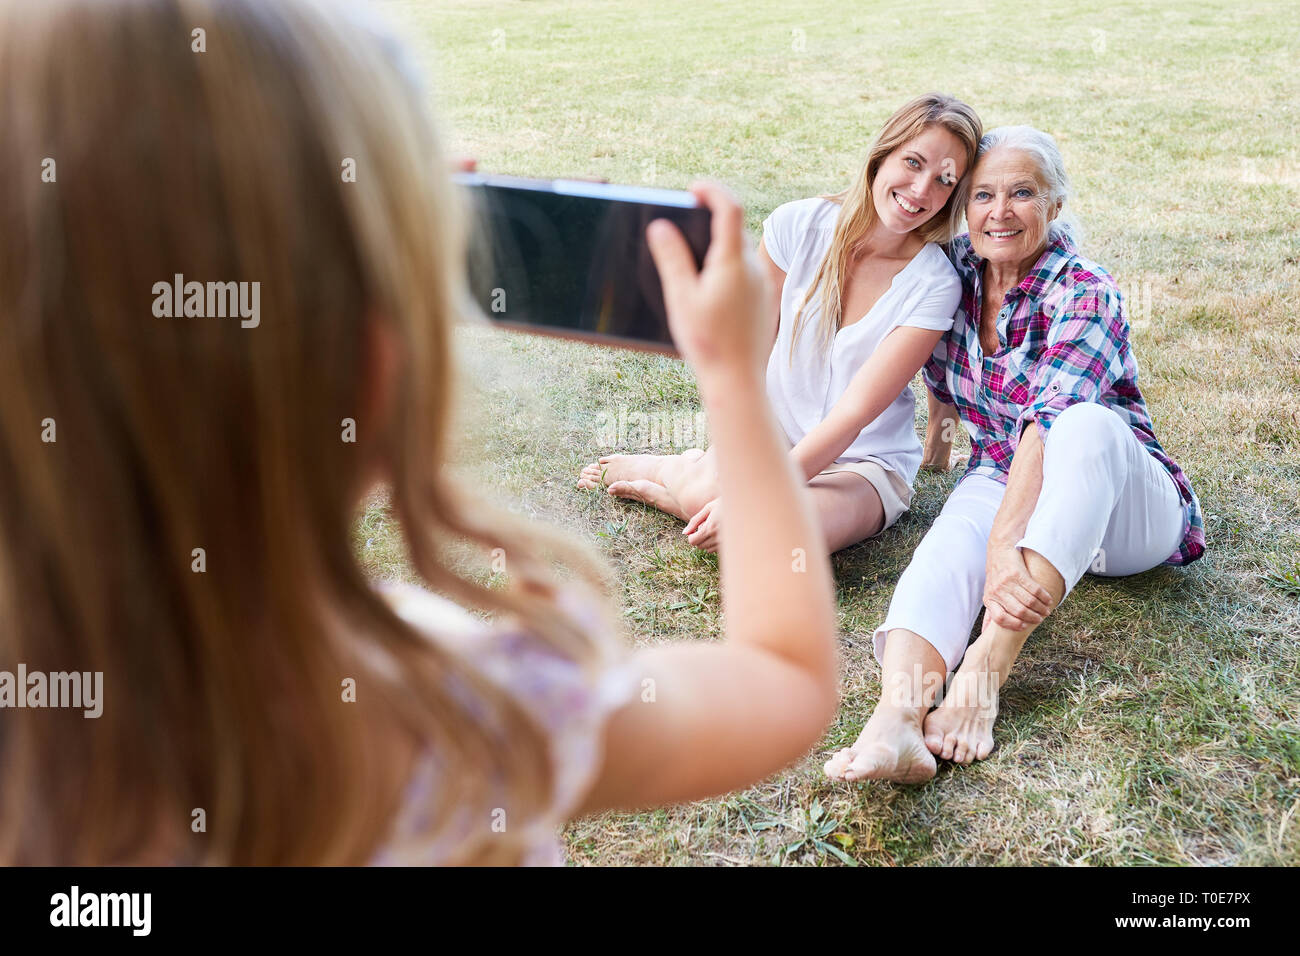 Kleines Mädchen Fotos Granny und ihre Mutter im Garten mit dem Smartphone Stockfoto